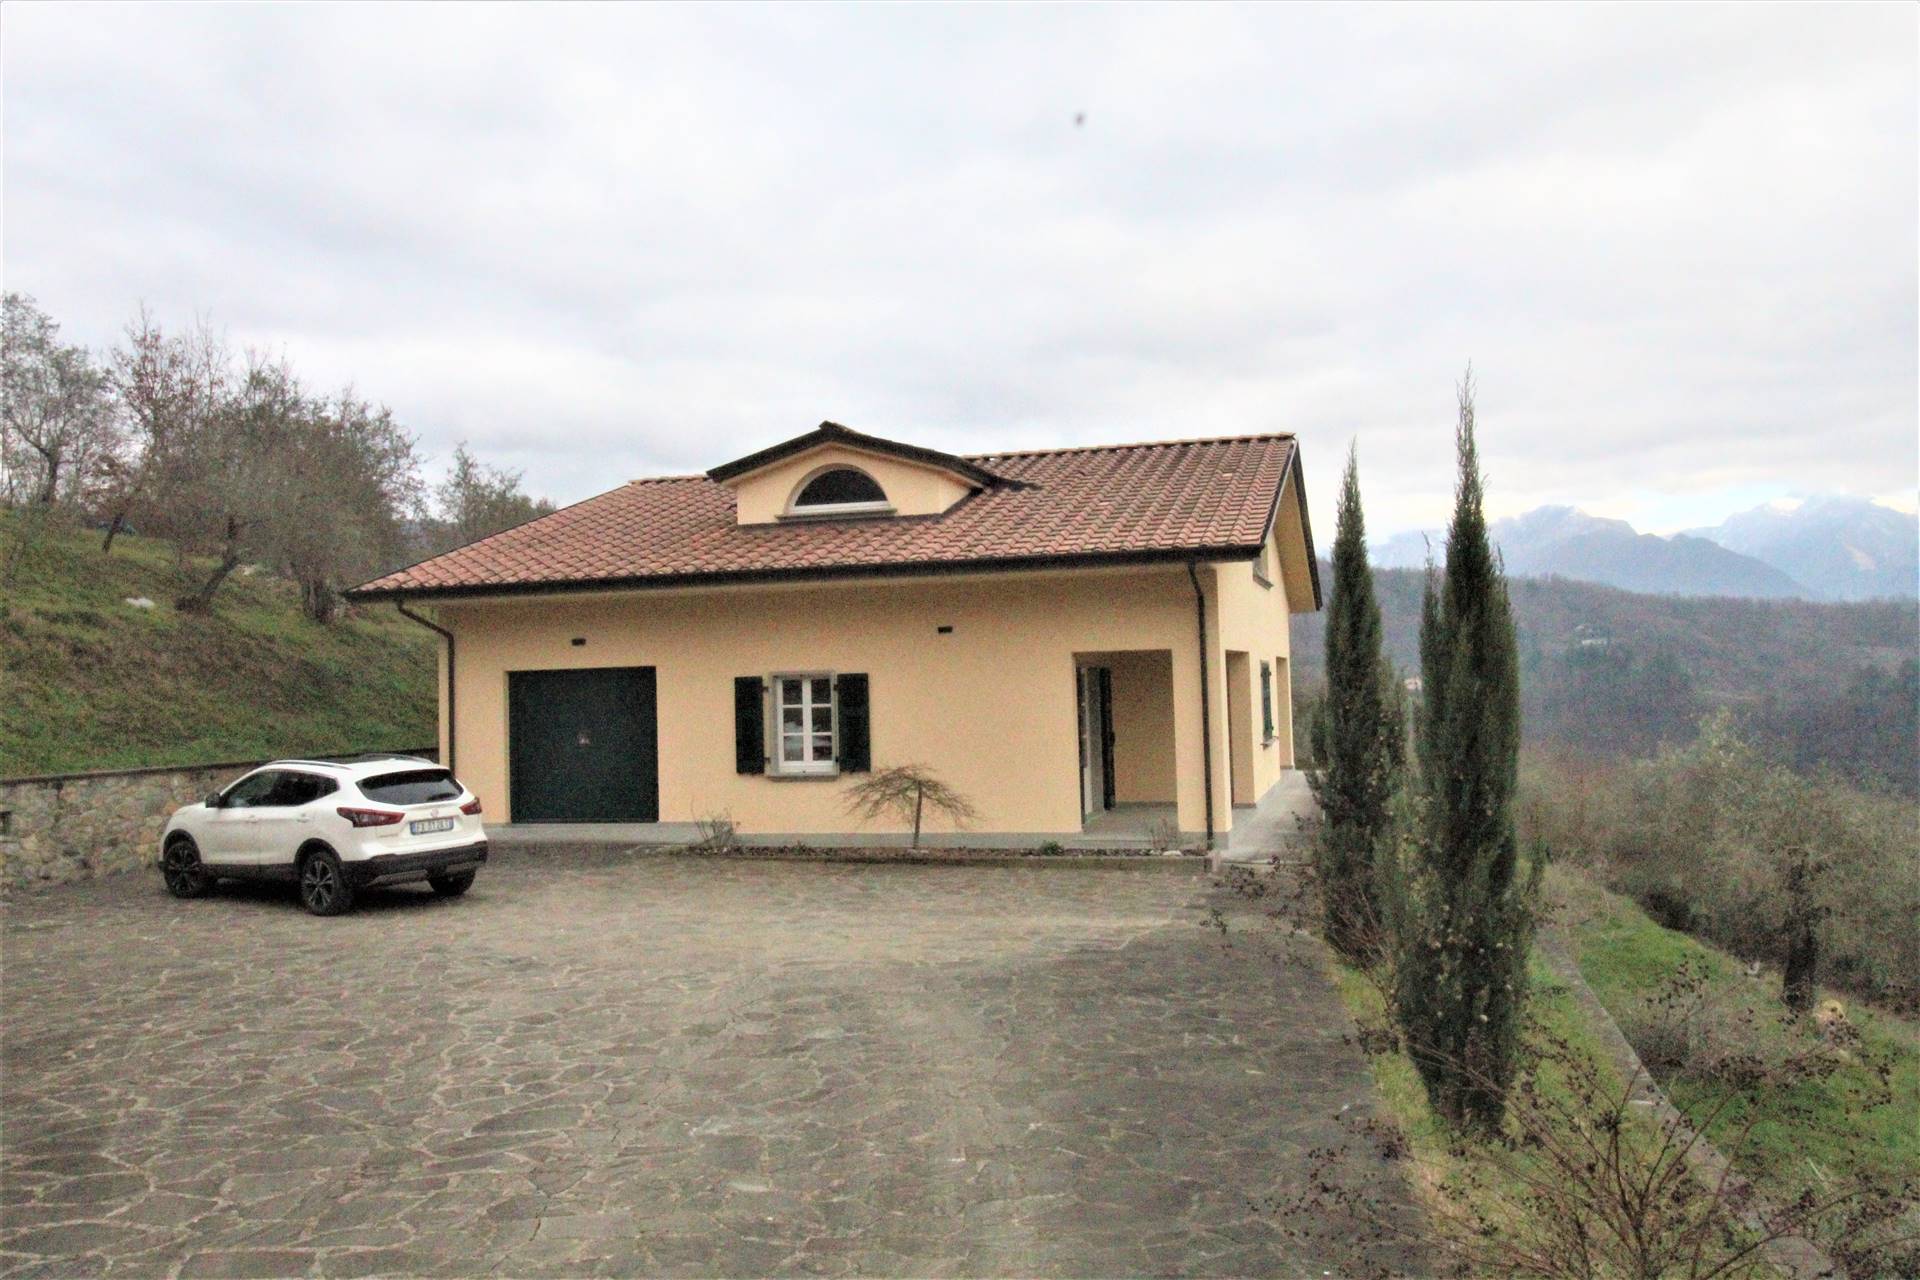 Villa in vendita a Fivizzano, 7 locali, zona Località: SOLIERA, prezzo € 525.000 | CambioCasa.it